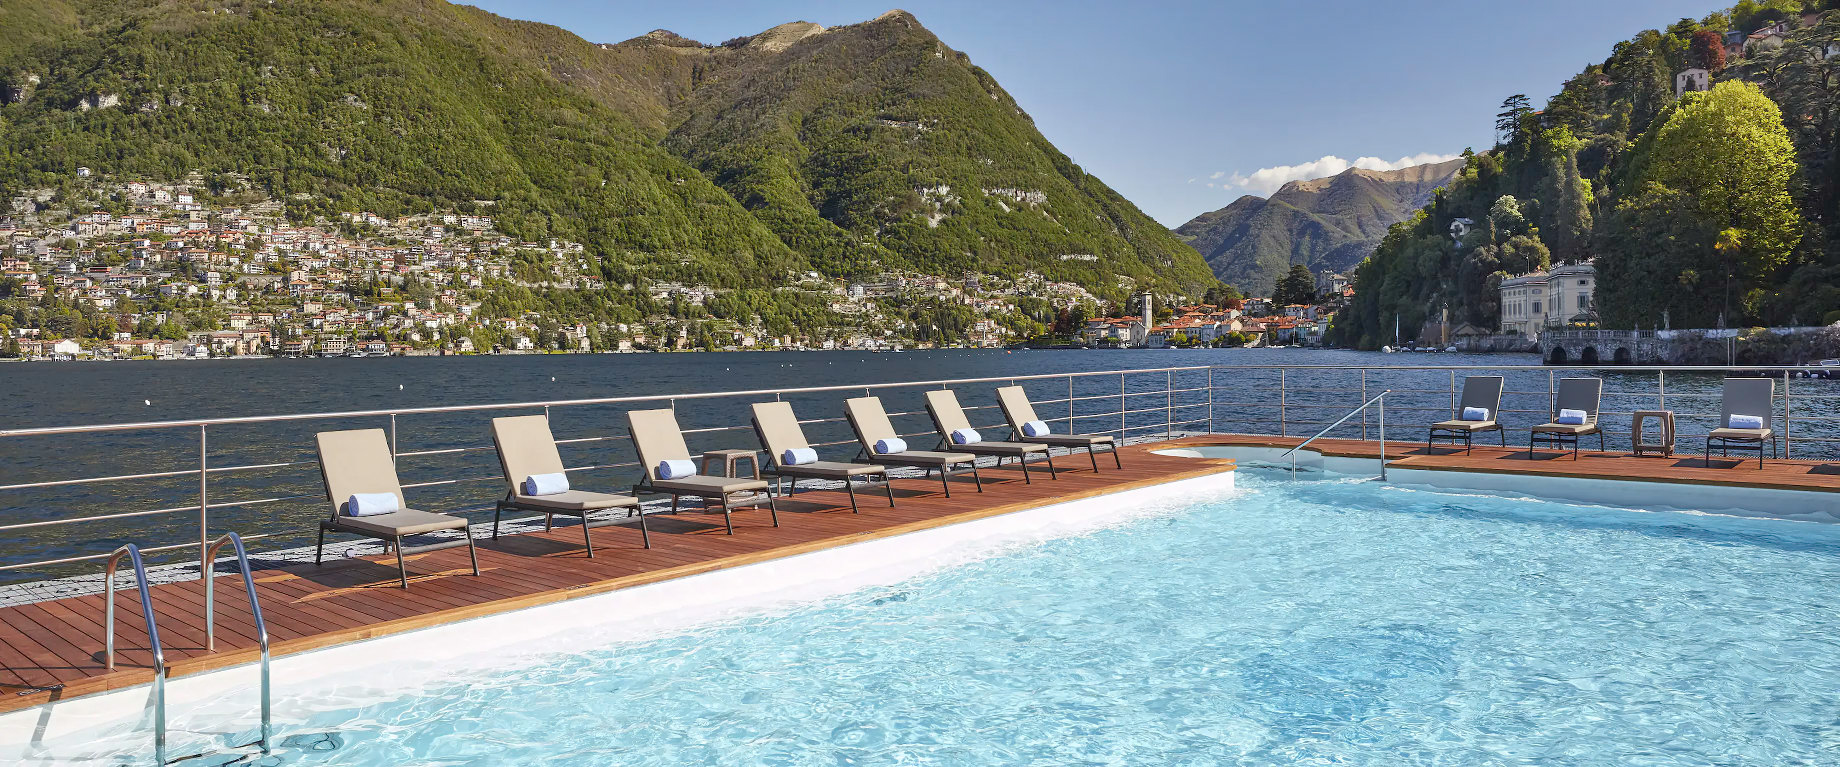 Mandarin Oriental, Lago di Como Hotel – Lake Como, Italy – Outdoor Pool Deck